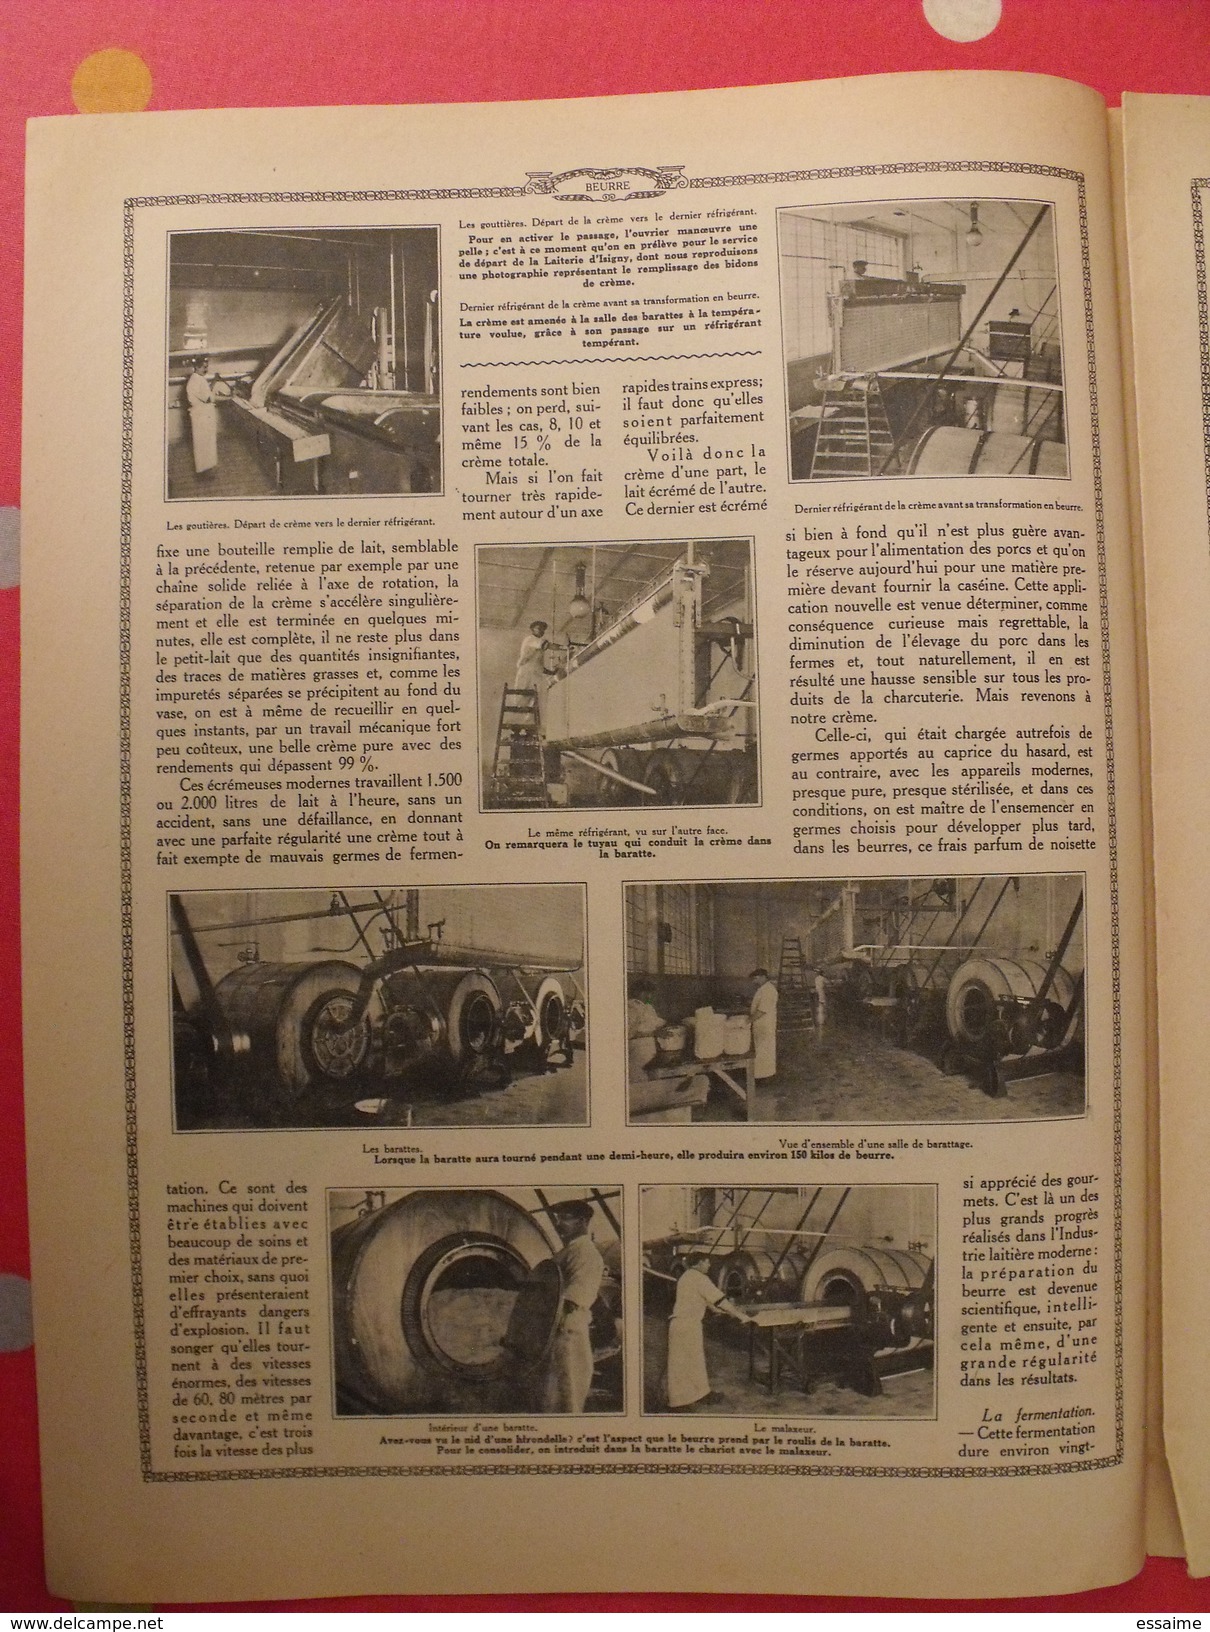 Le monde et la science 1935. bactériologie beurre margarine café champagne chauffage. nombreuses photos encyclopédie